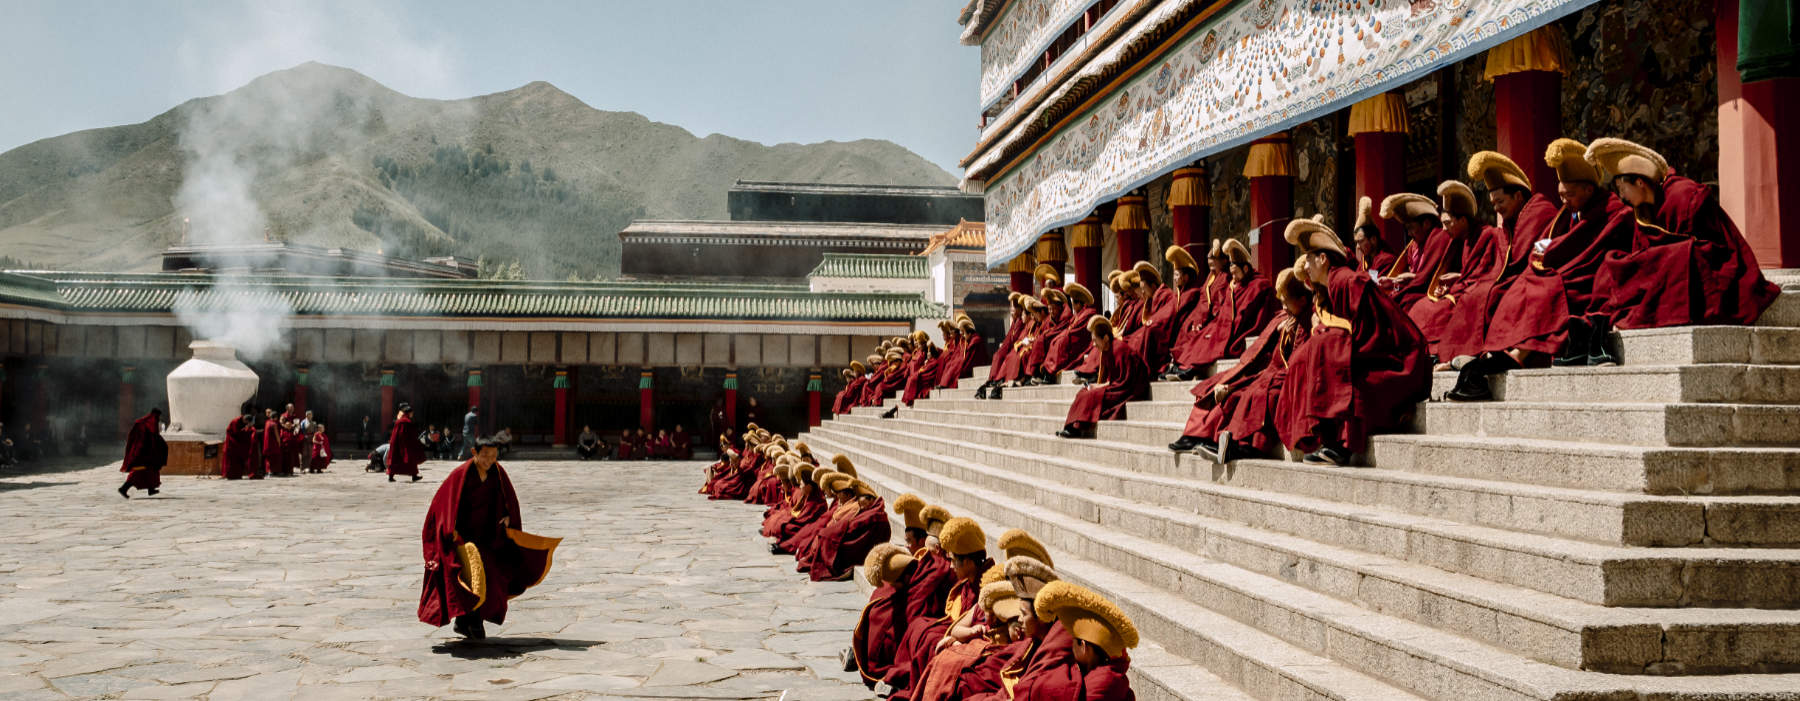 All our Tibet<br class="hidden-md hidden-lg" /> Cultural Holidays